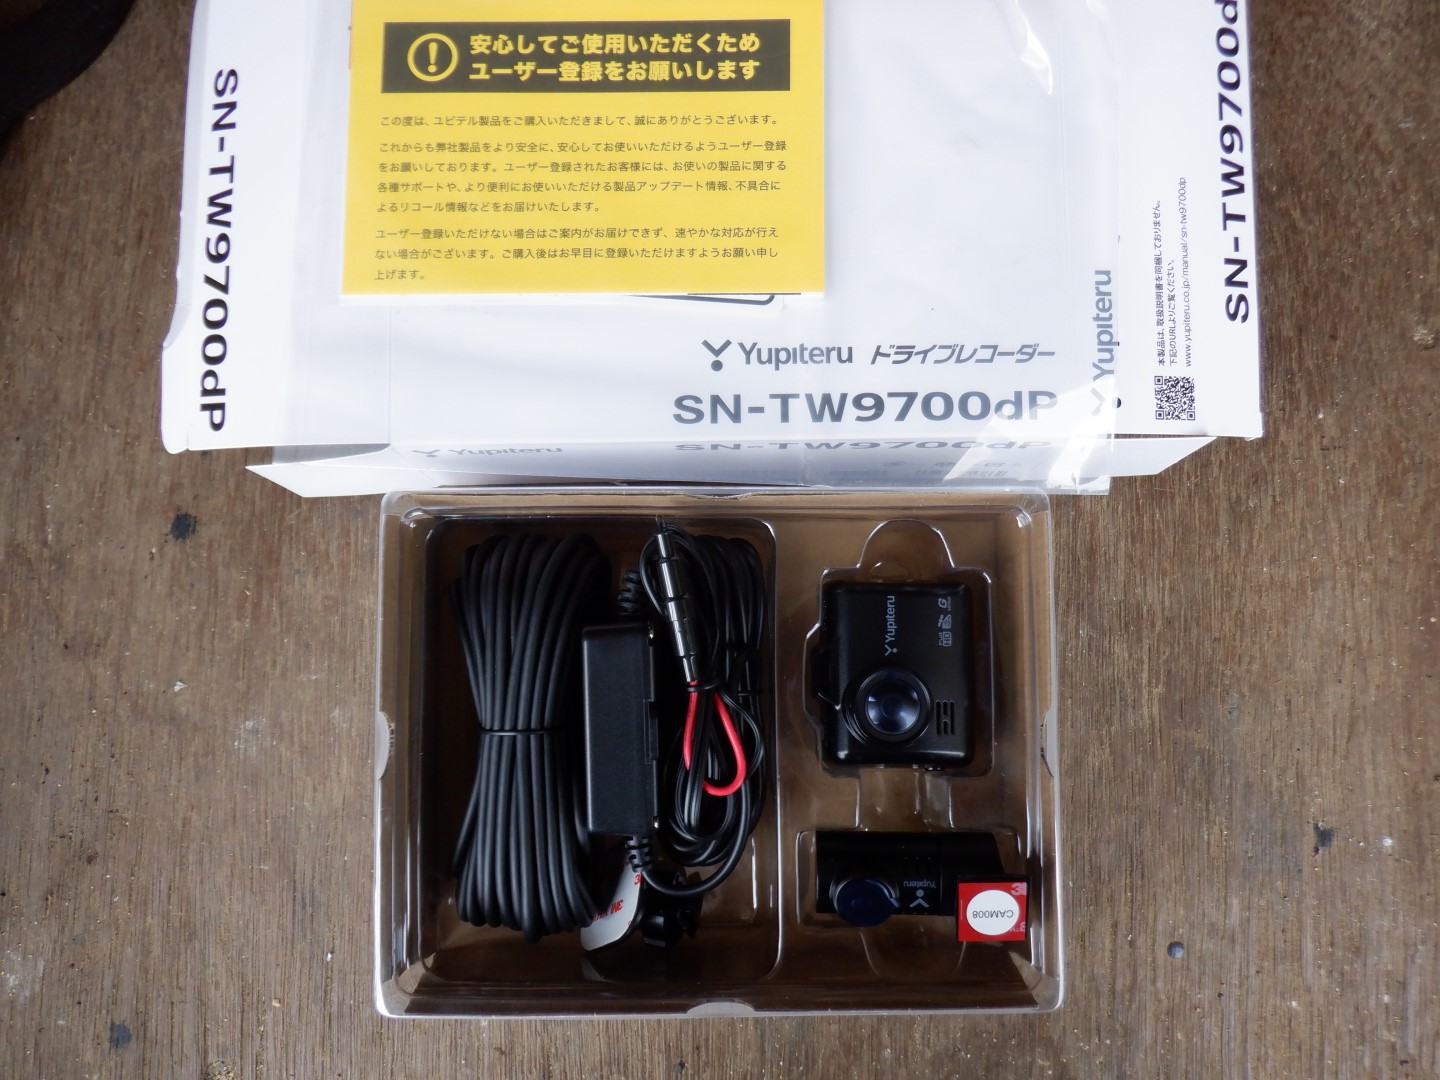 ドライブレコーダー ユピテル SN-TW9700dPの取り付け方 フロントカメラ 